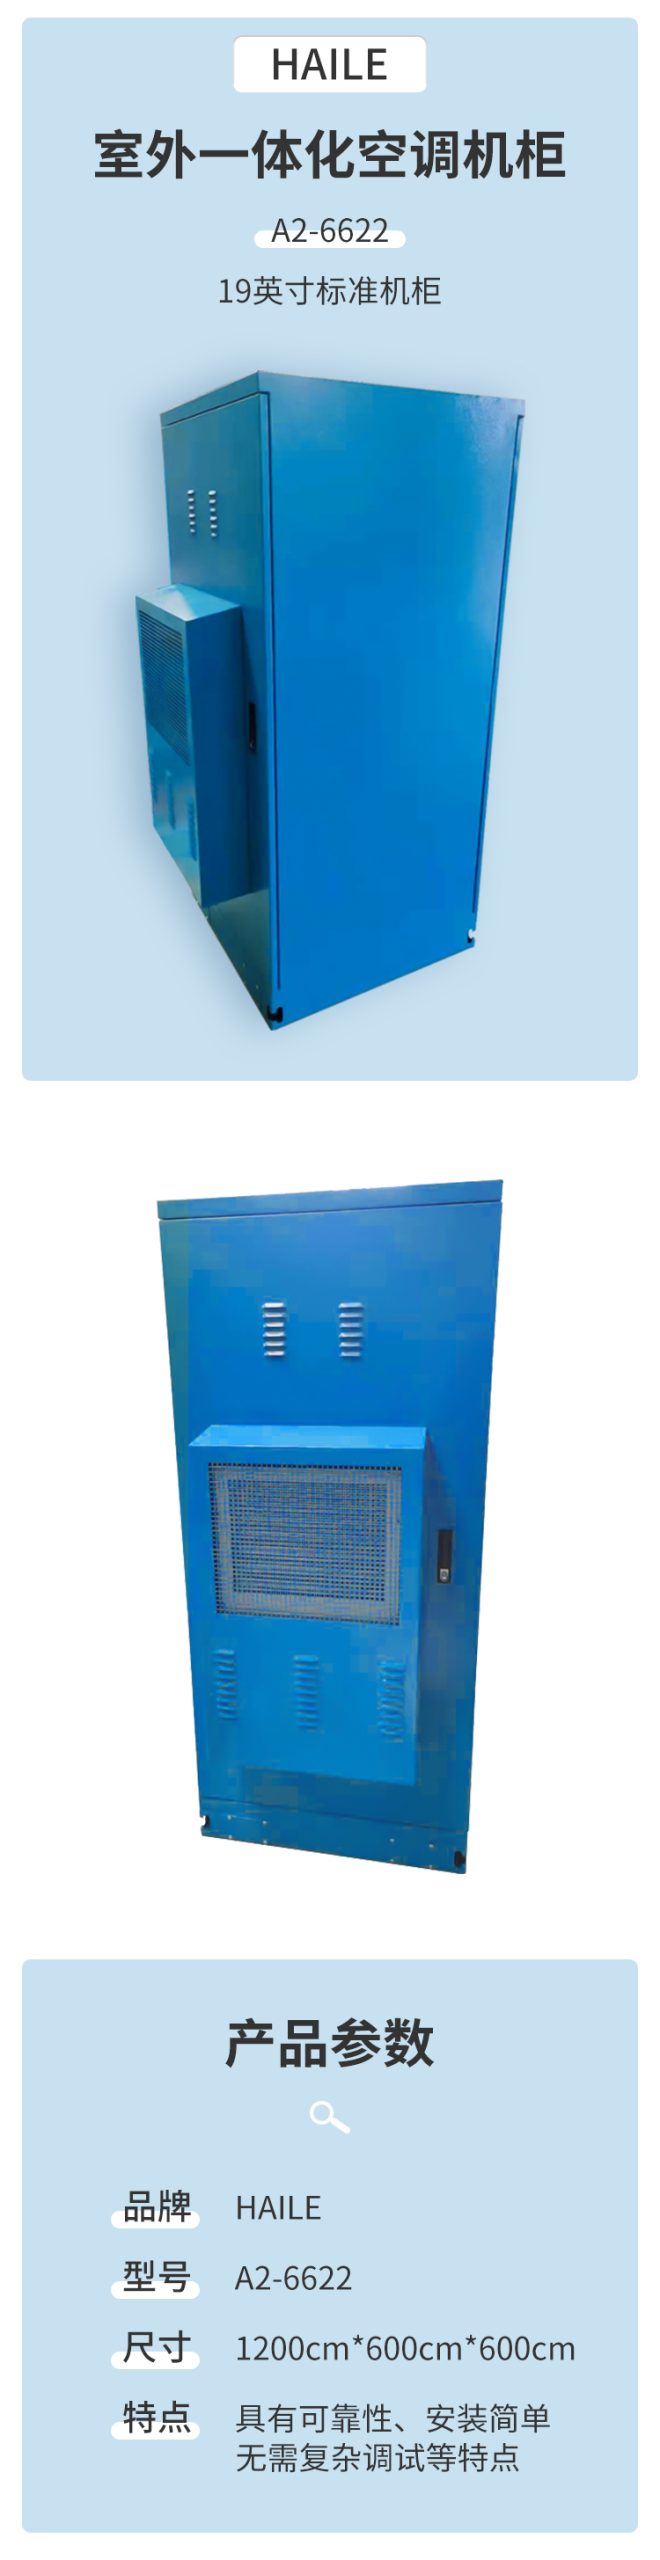 室外空调机柜 1.2米高600*600 19英寸标准机柜 空调功率800W制冷量 A2-6622_http://www.haile-cn.com.cn_布线产品_第1张